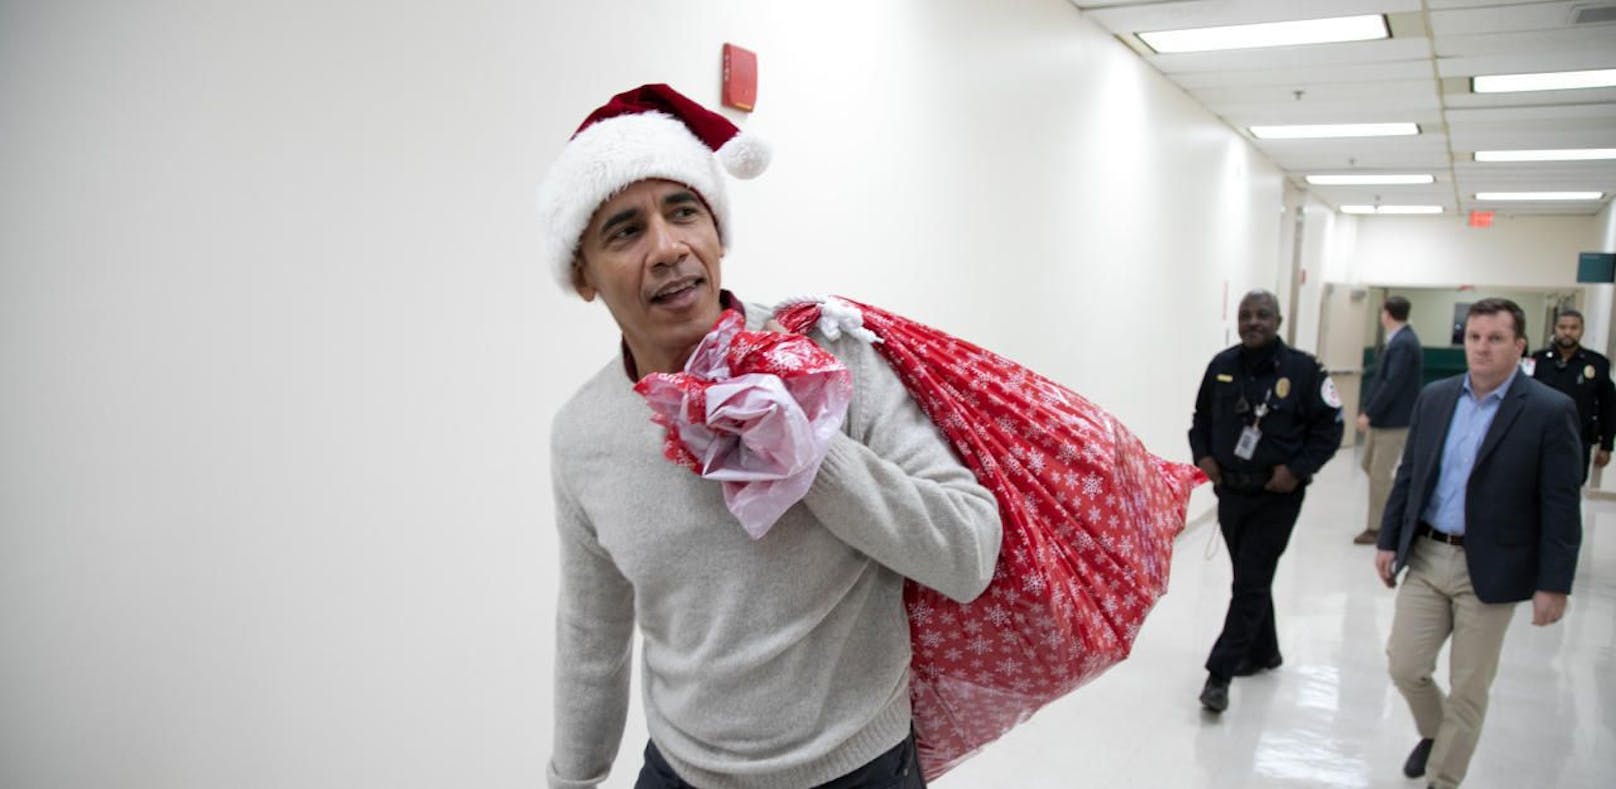 Das passiert, wenn Obama als Santa Spital besucht